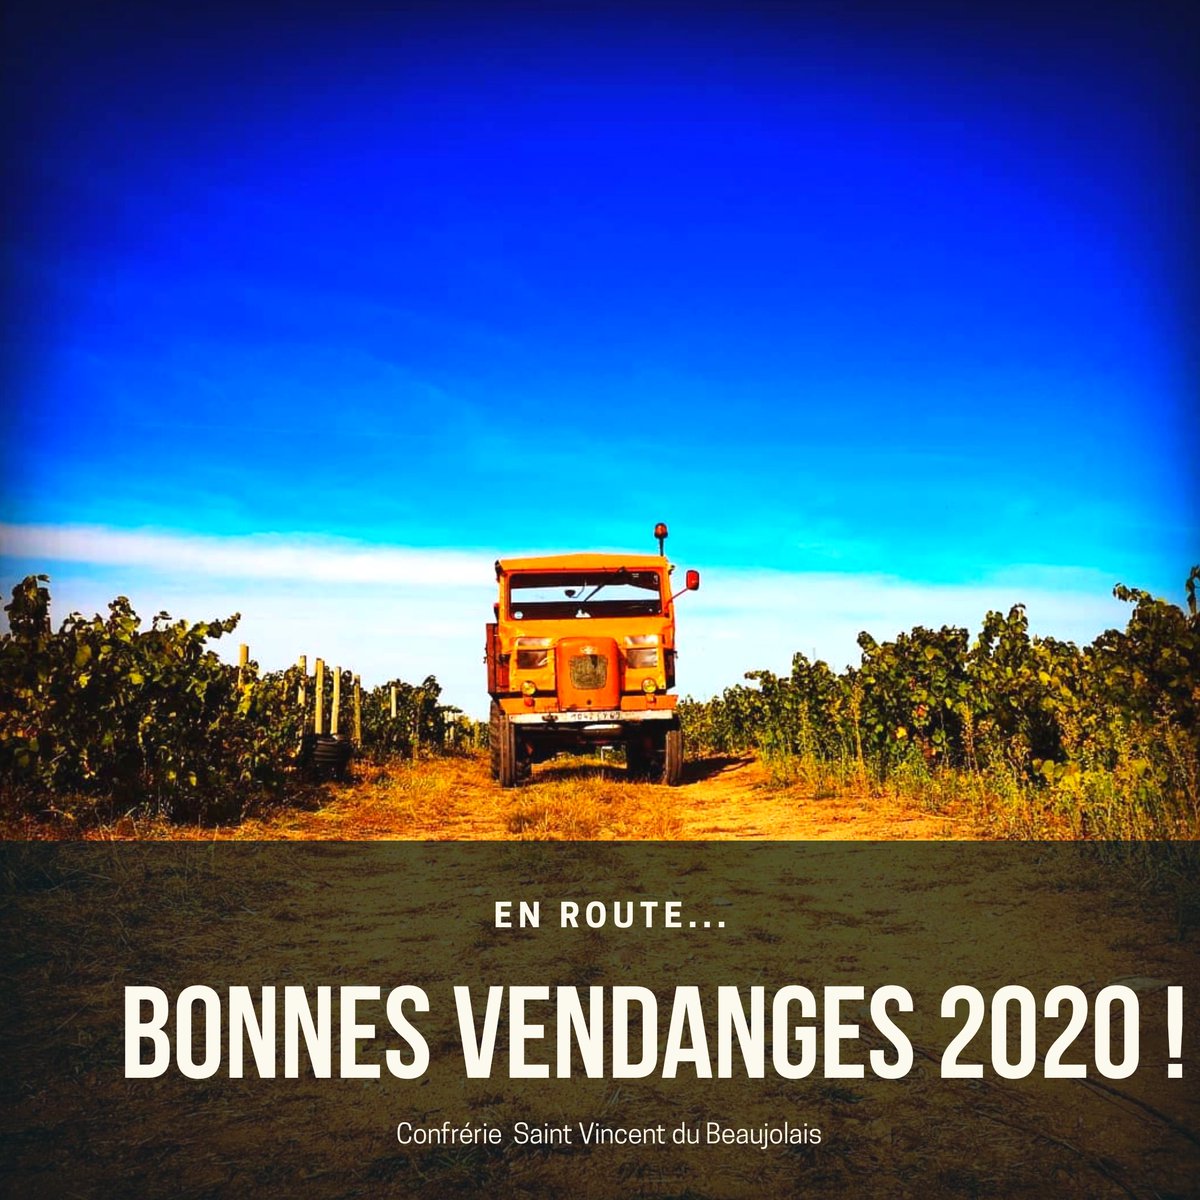 Bonnes vendanges 2020 !

#vendanges #harvest20 #Harvest2020 #beaujolais #beautiful #NaturePhotography #vines #vendanges2020